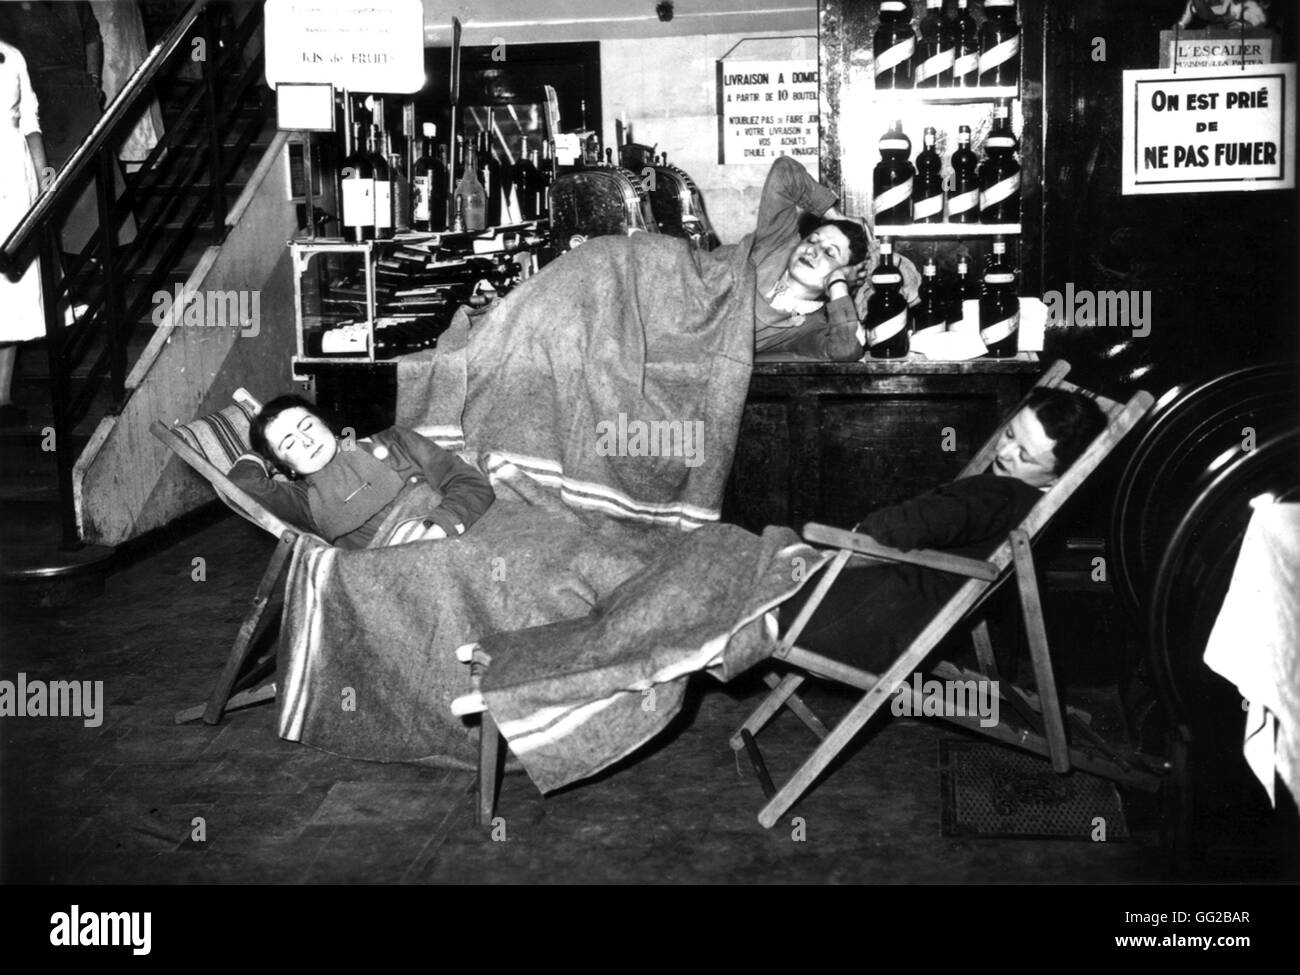 Les grévistes d'un département français store à Paris la préparation pour la nuit, 1936. De nombreux travailleurs sont en grève depuis la montée au pouvoir du Front populaire en France. Banque D'Images